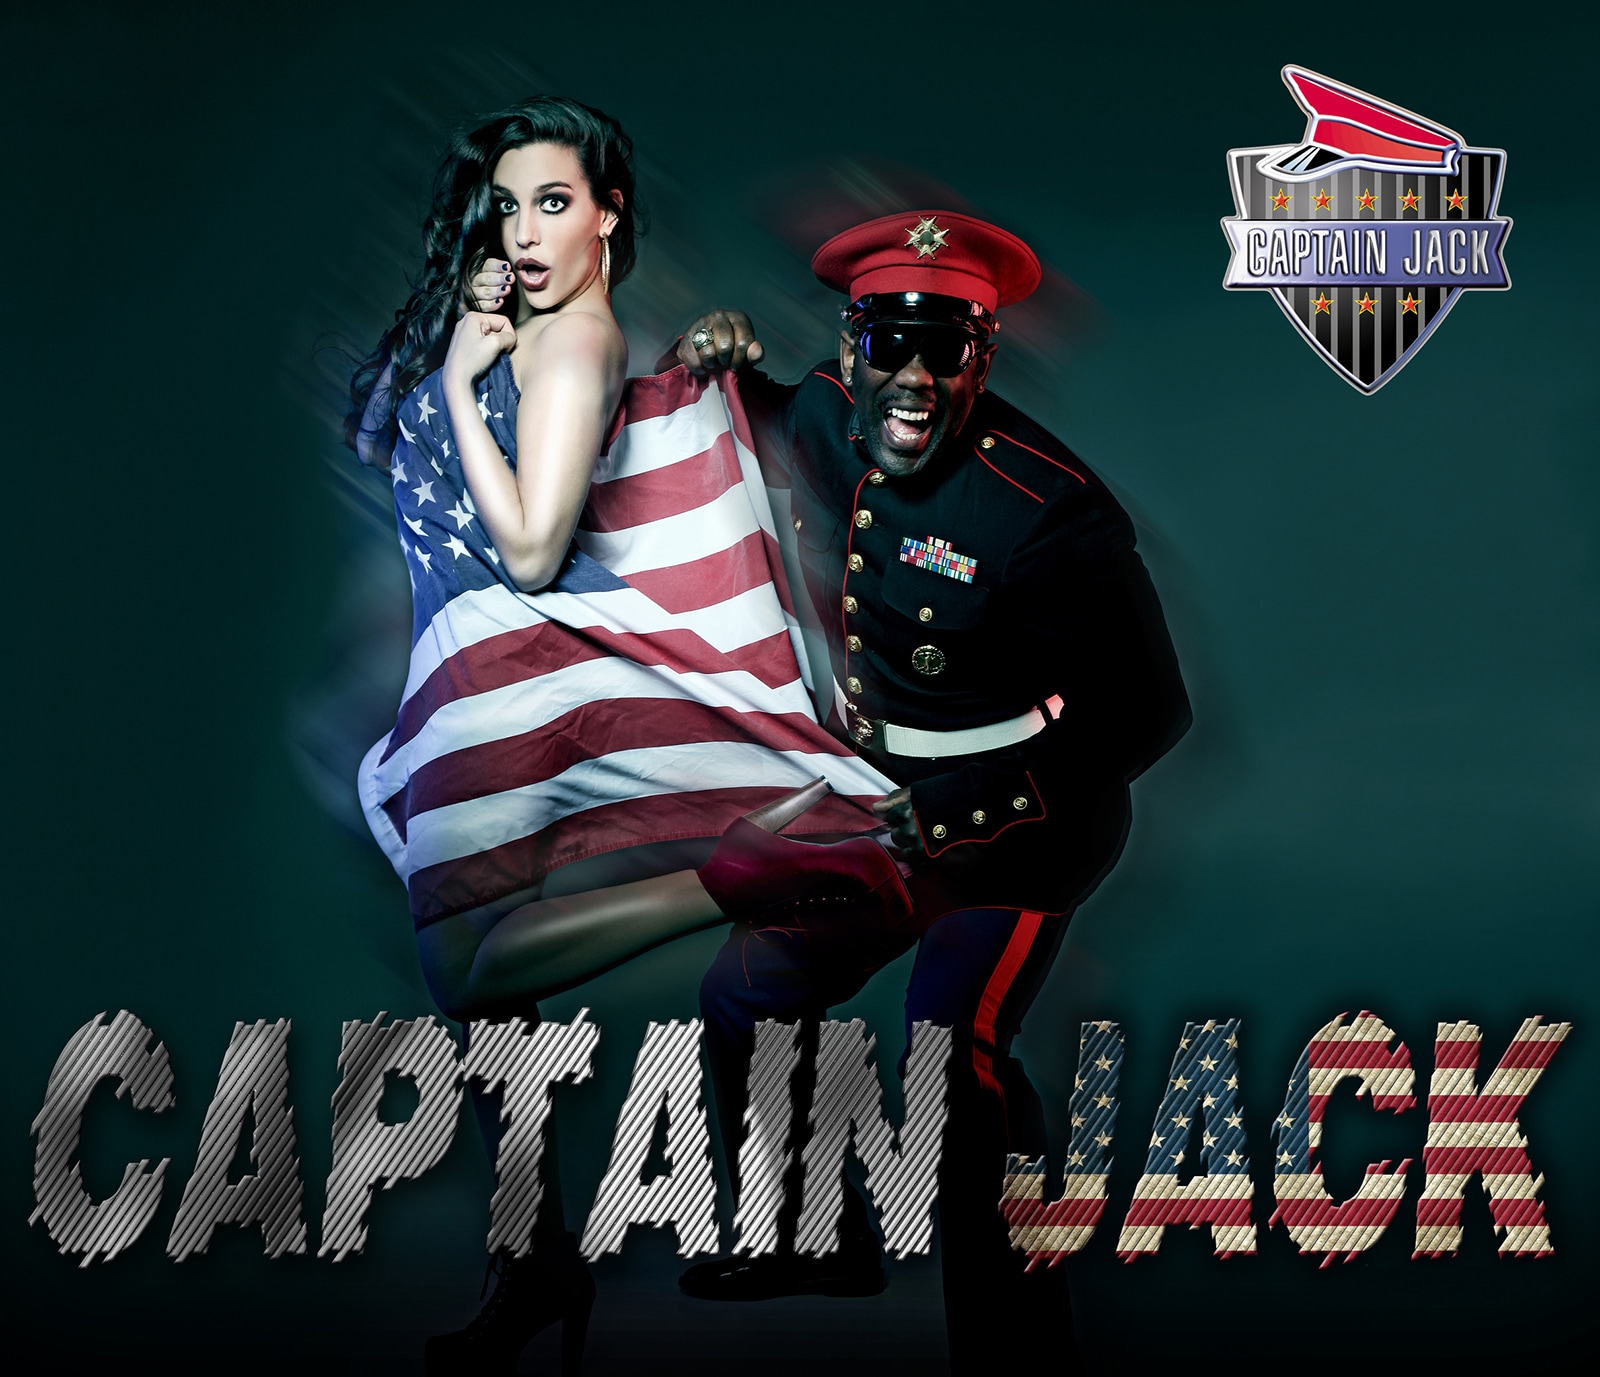 Captain jacks interview